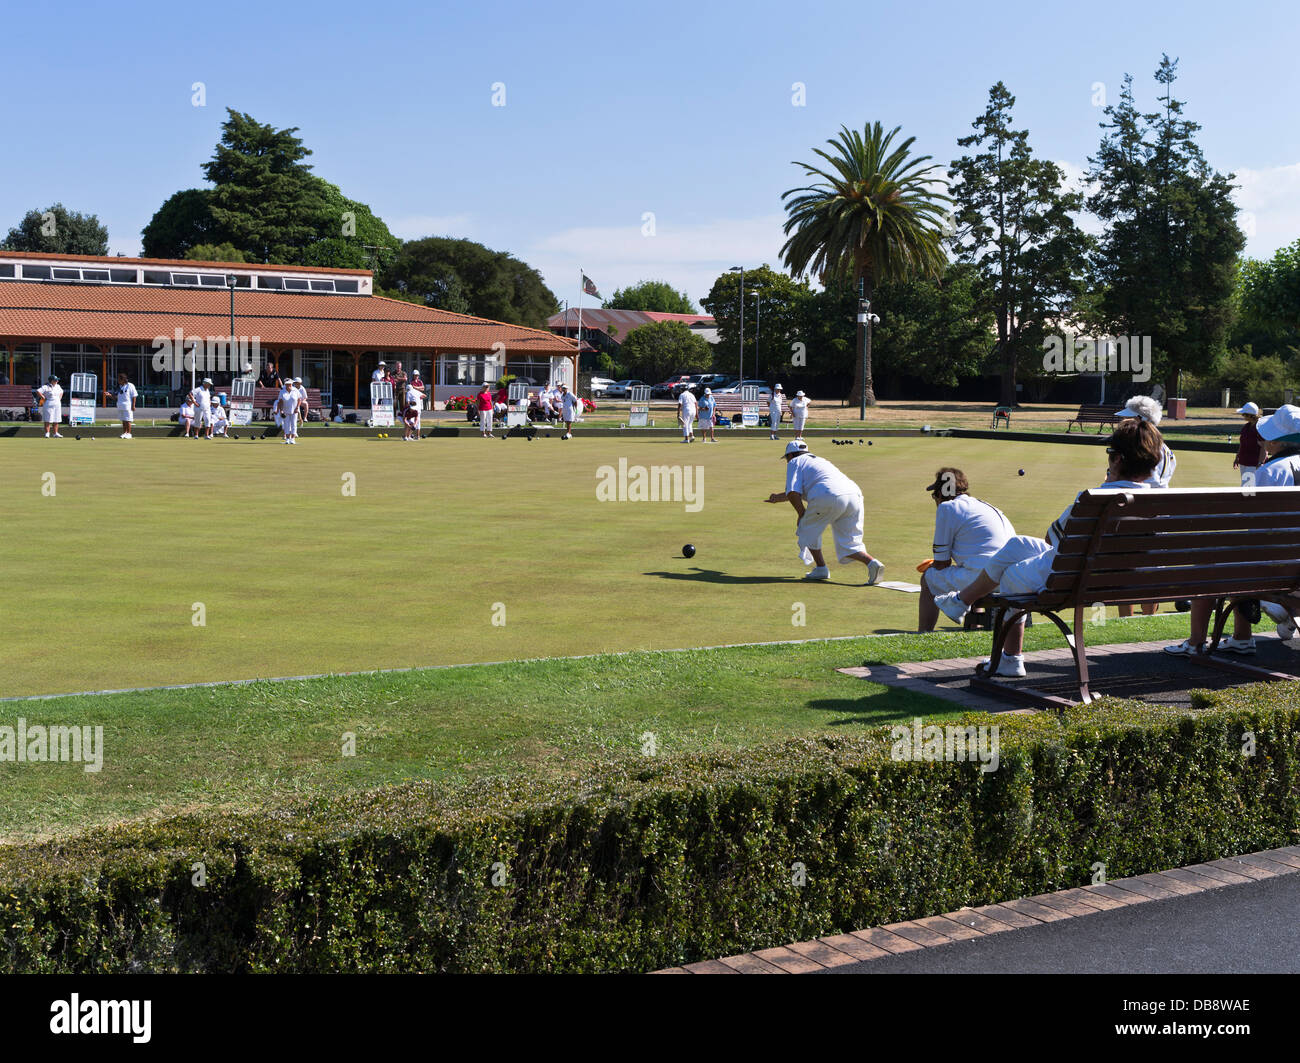 dh Paepaekumana ville public Park ROTORUA NOUVELLE-ZÉLANDE Outdoors New Zealanders jouant des boules de pelouse bowling vert personnes activités Banque D'Images